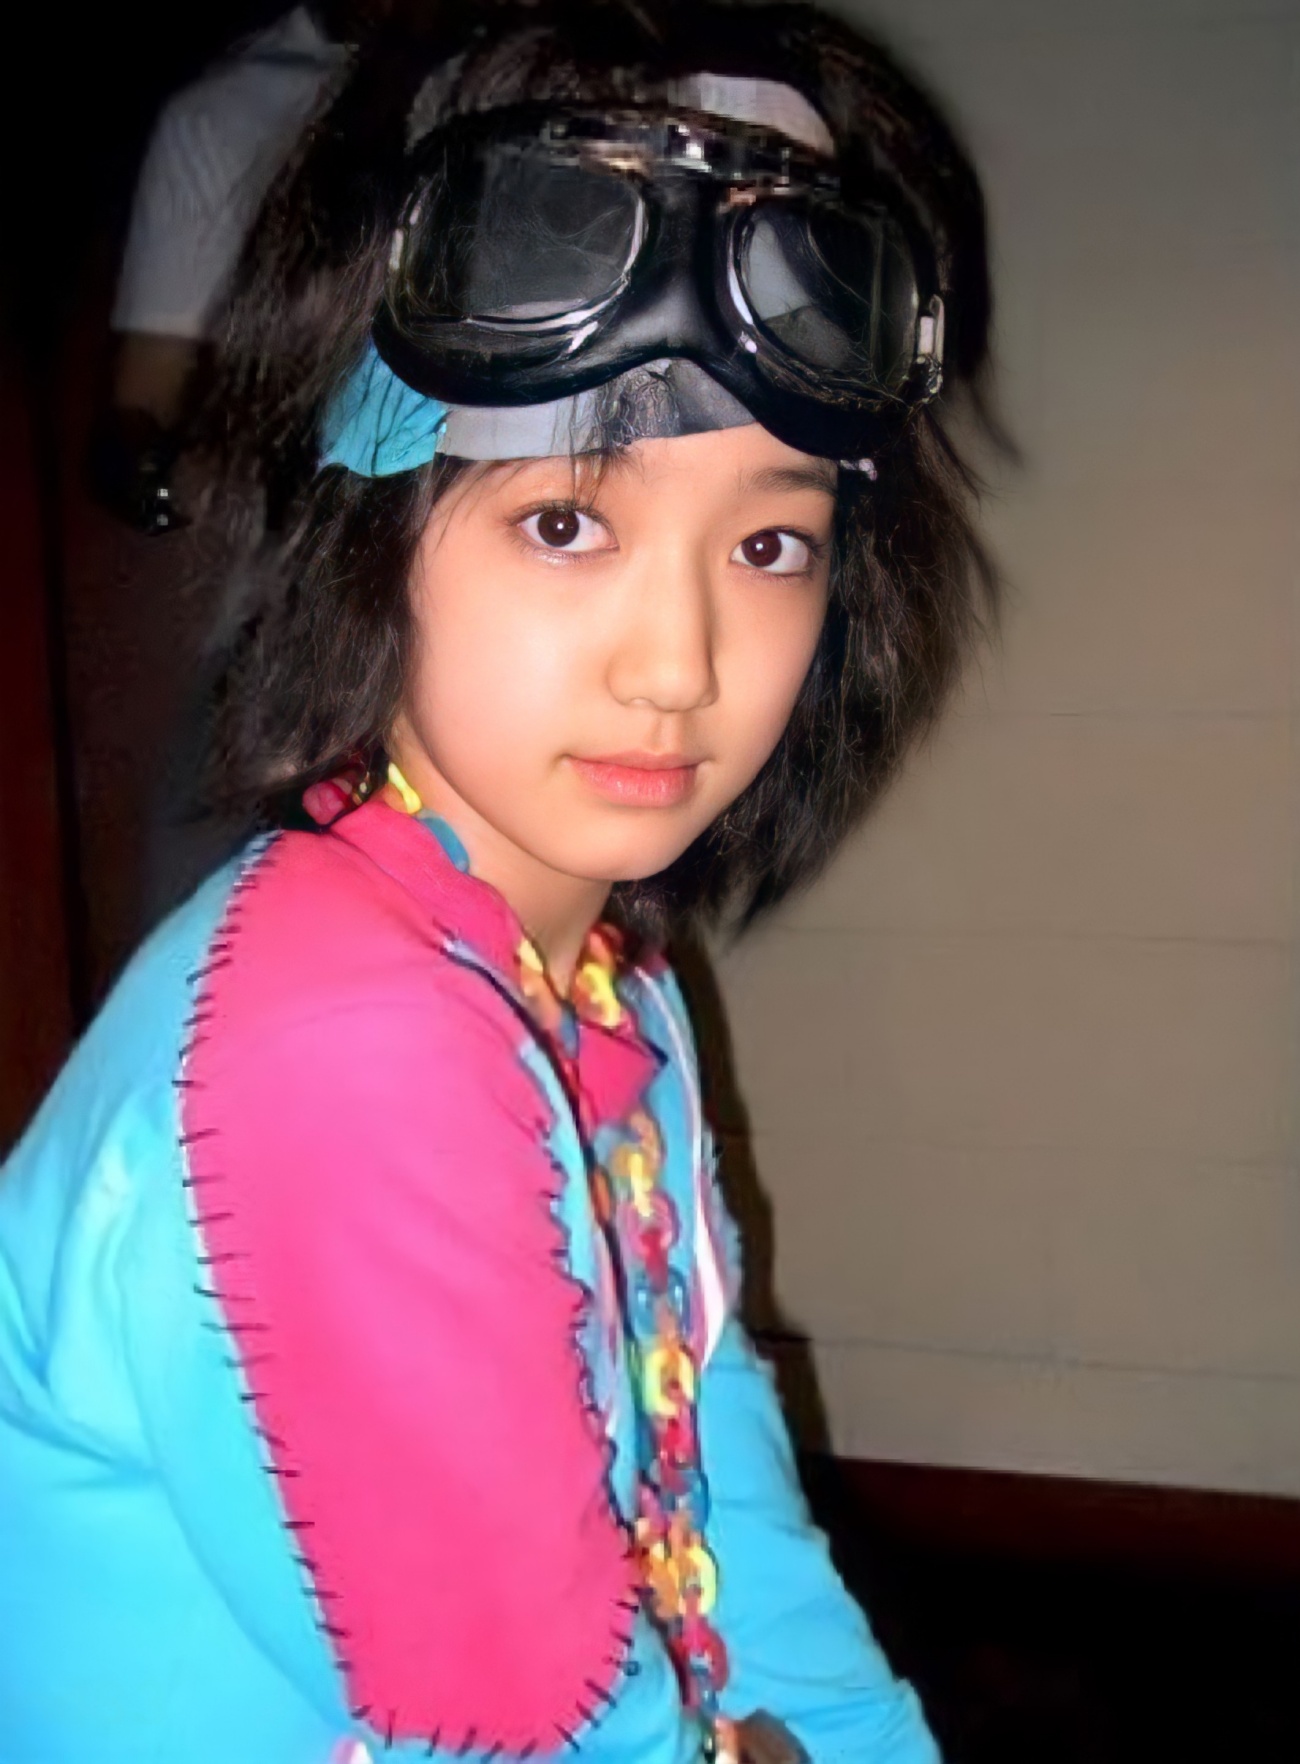 Shin Hye năm 11 tuổi, đôi mắt to và sóng mũi thẳng. Cô Park xuất hiện lần đầu tiên trong video âm nhạc Flower của ca sĩ Lee Seung-hwan, [6] sau đó được đào tạo chính thức về ca hát, vũ đạo và diễn xuất. [7]